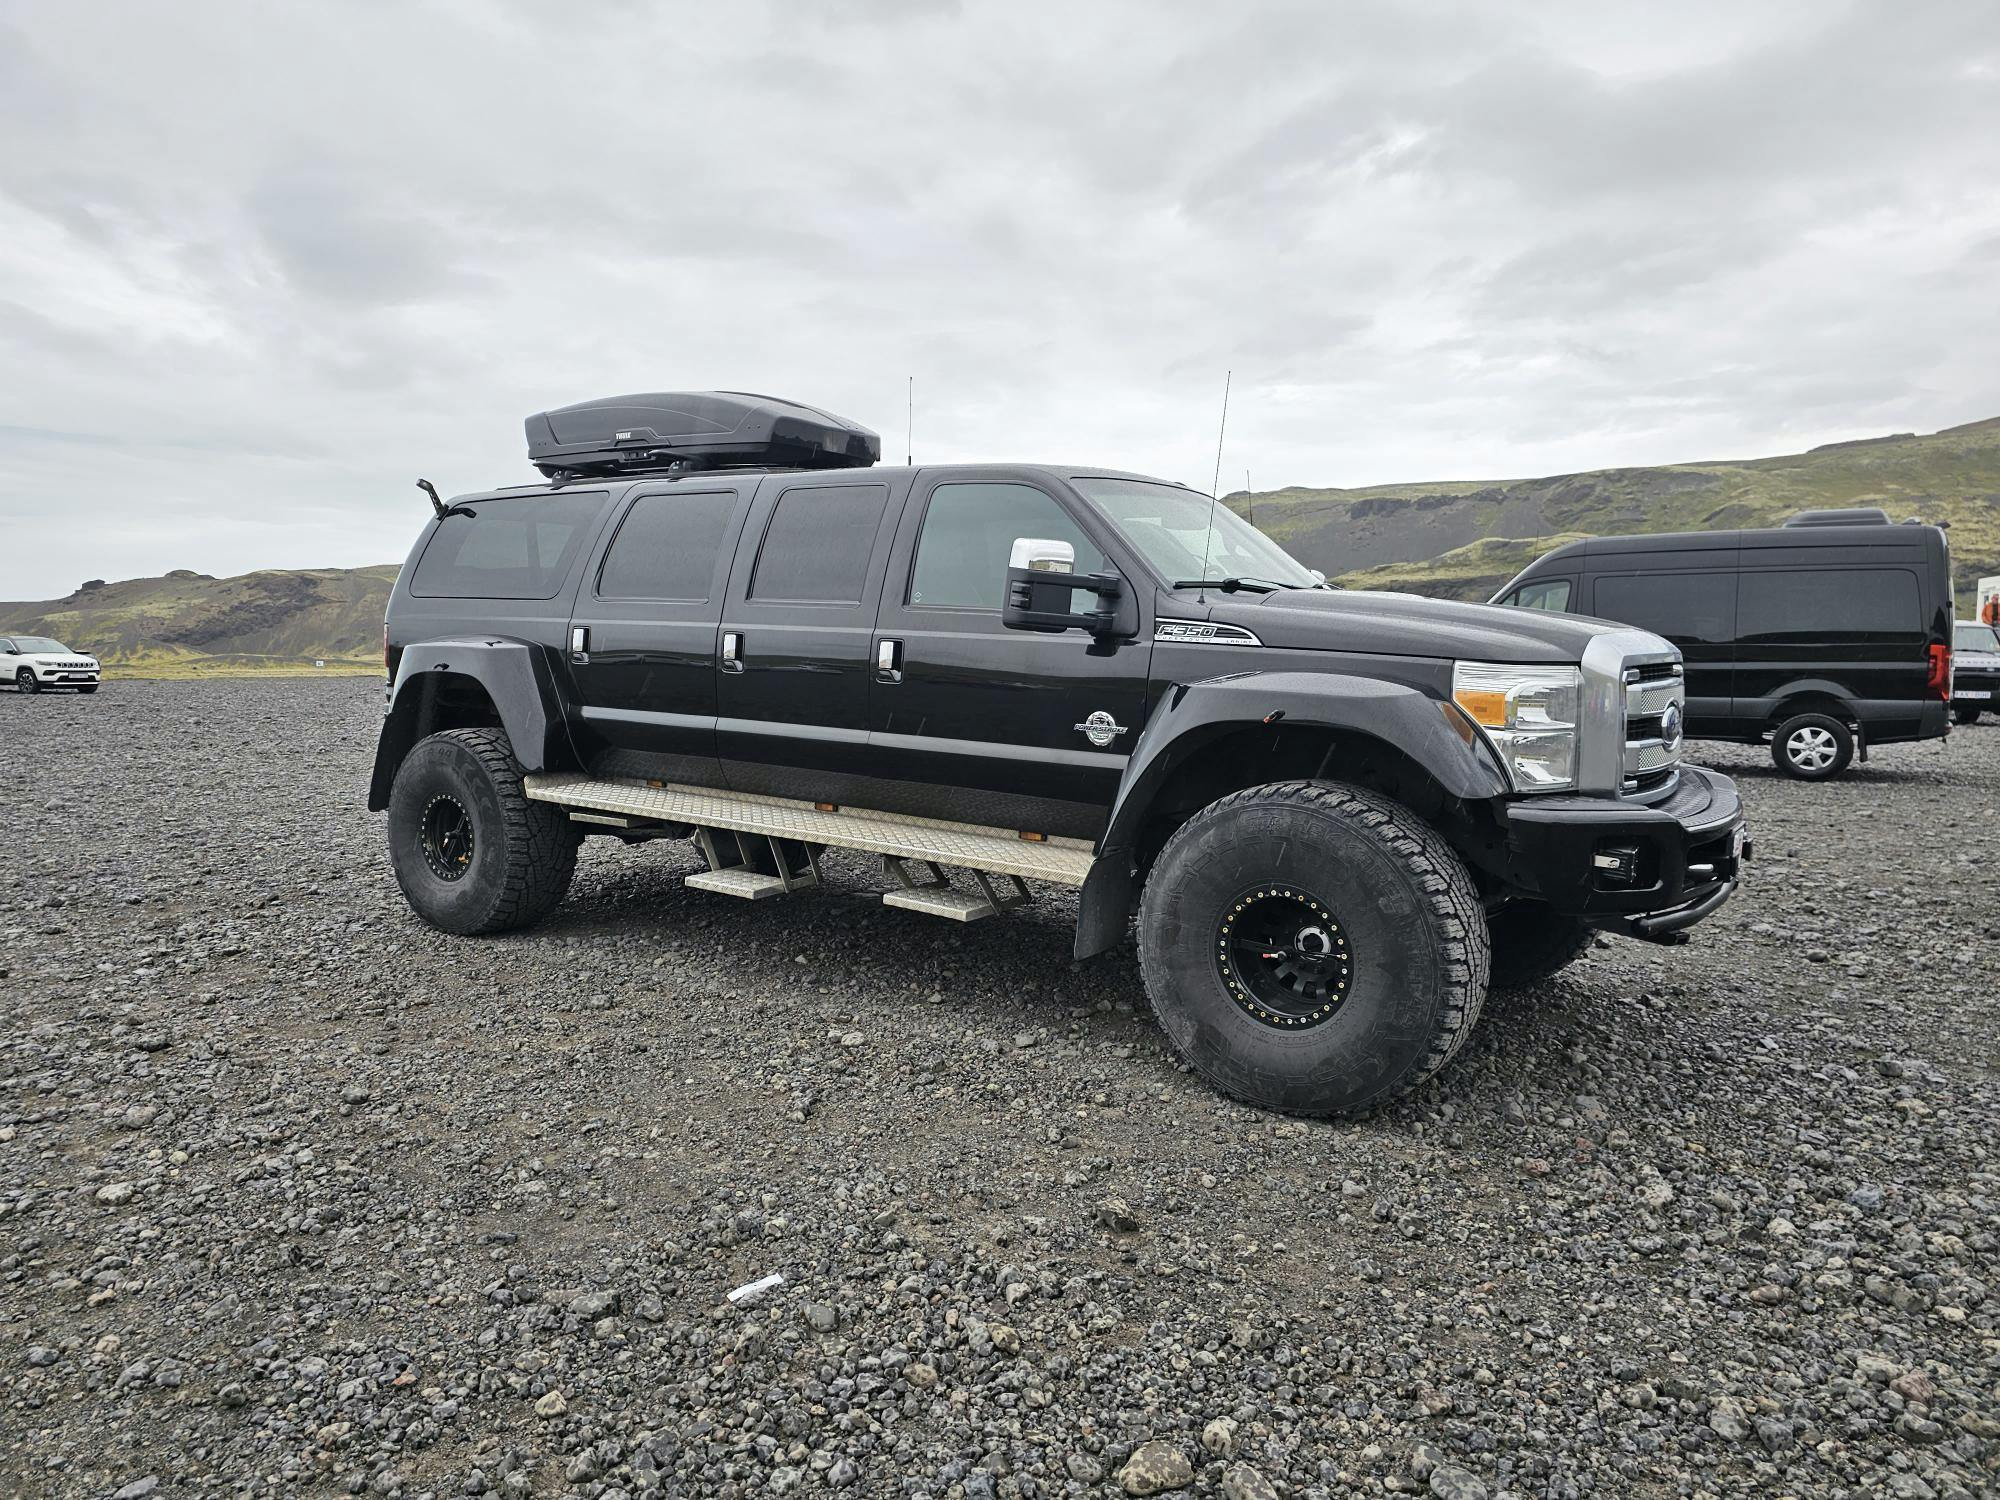 Iceland Cool Truck overlander